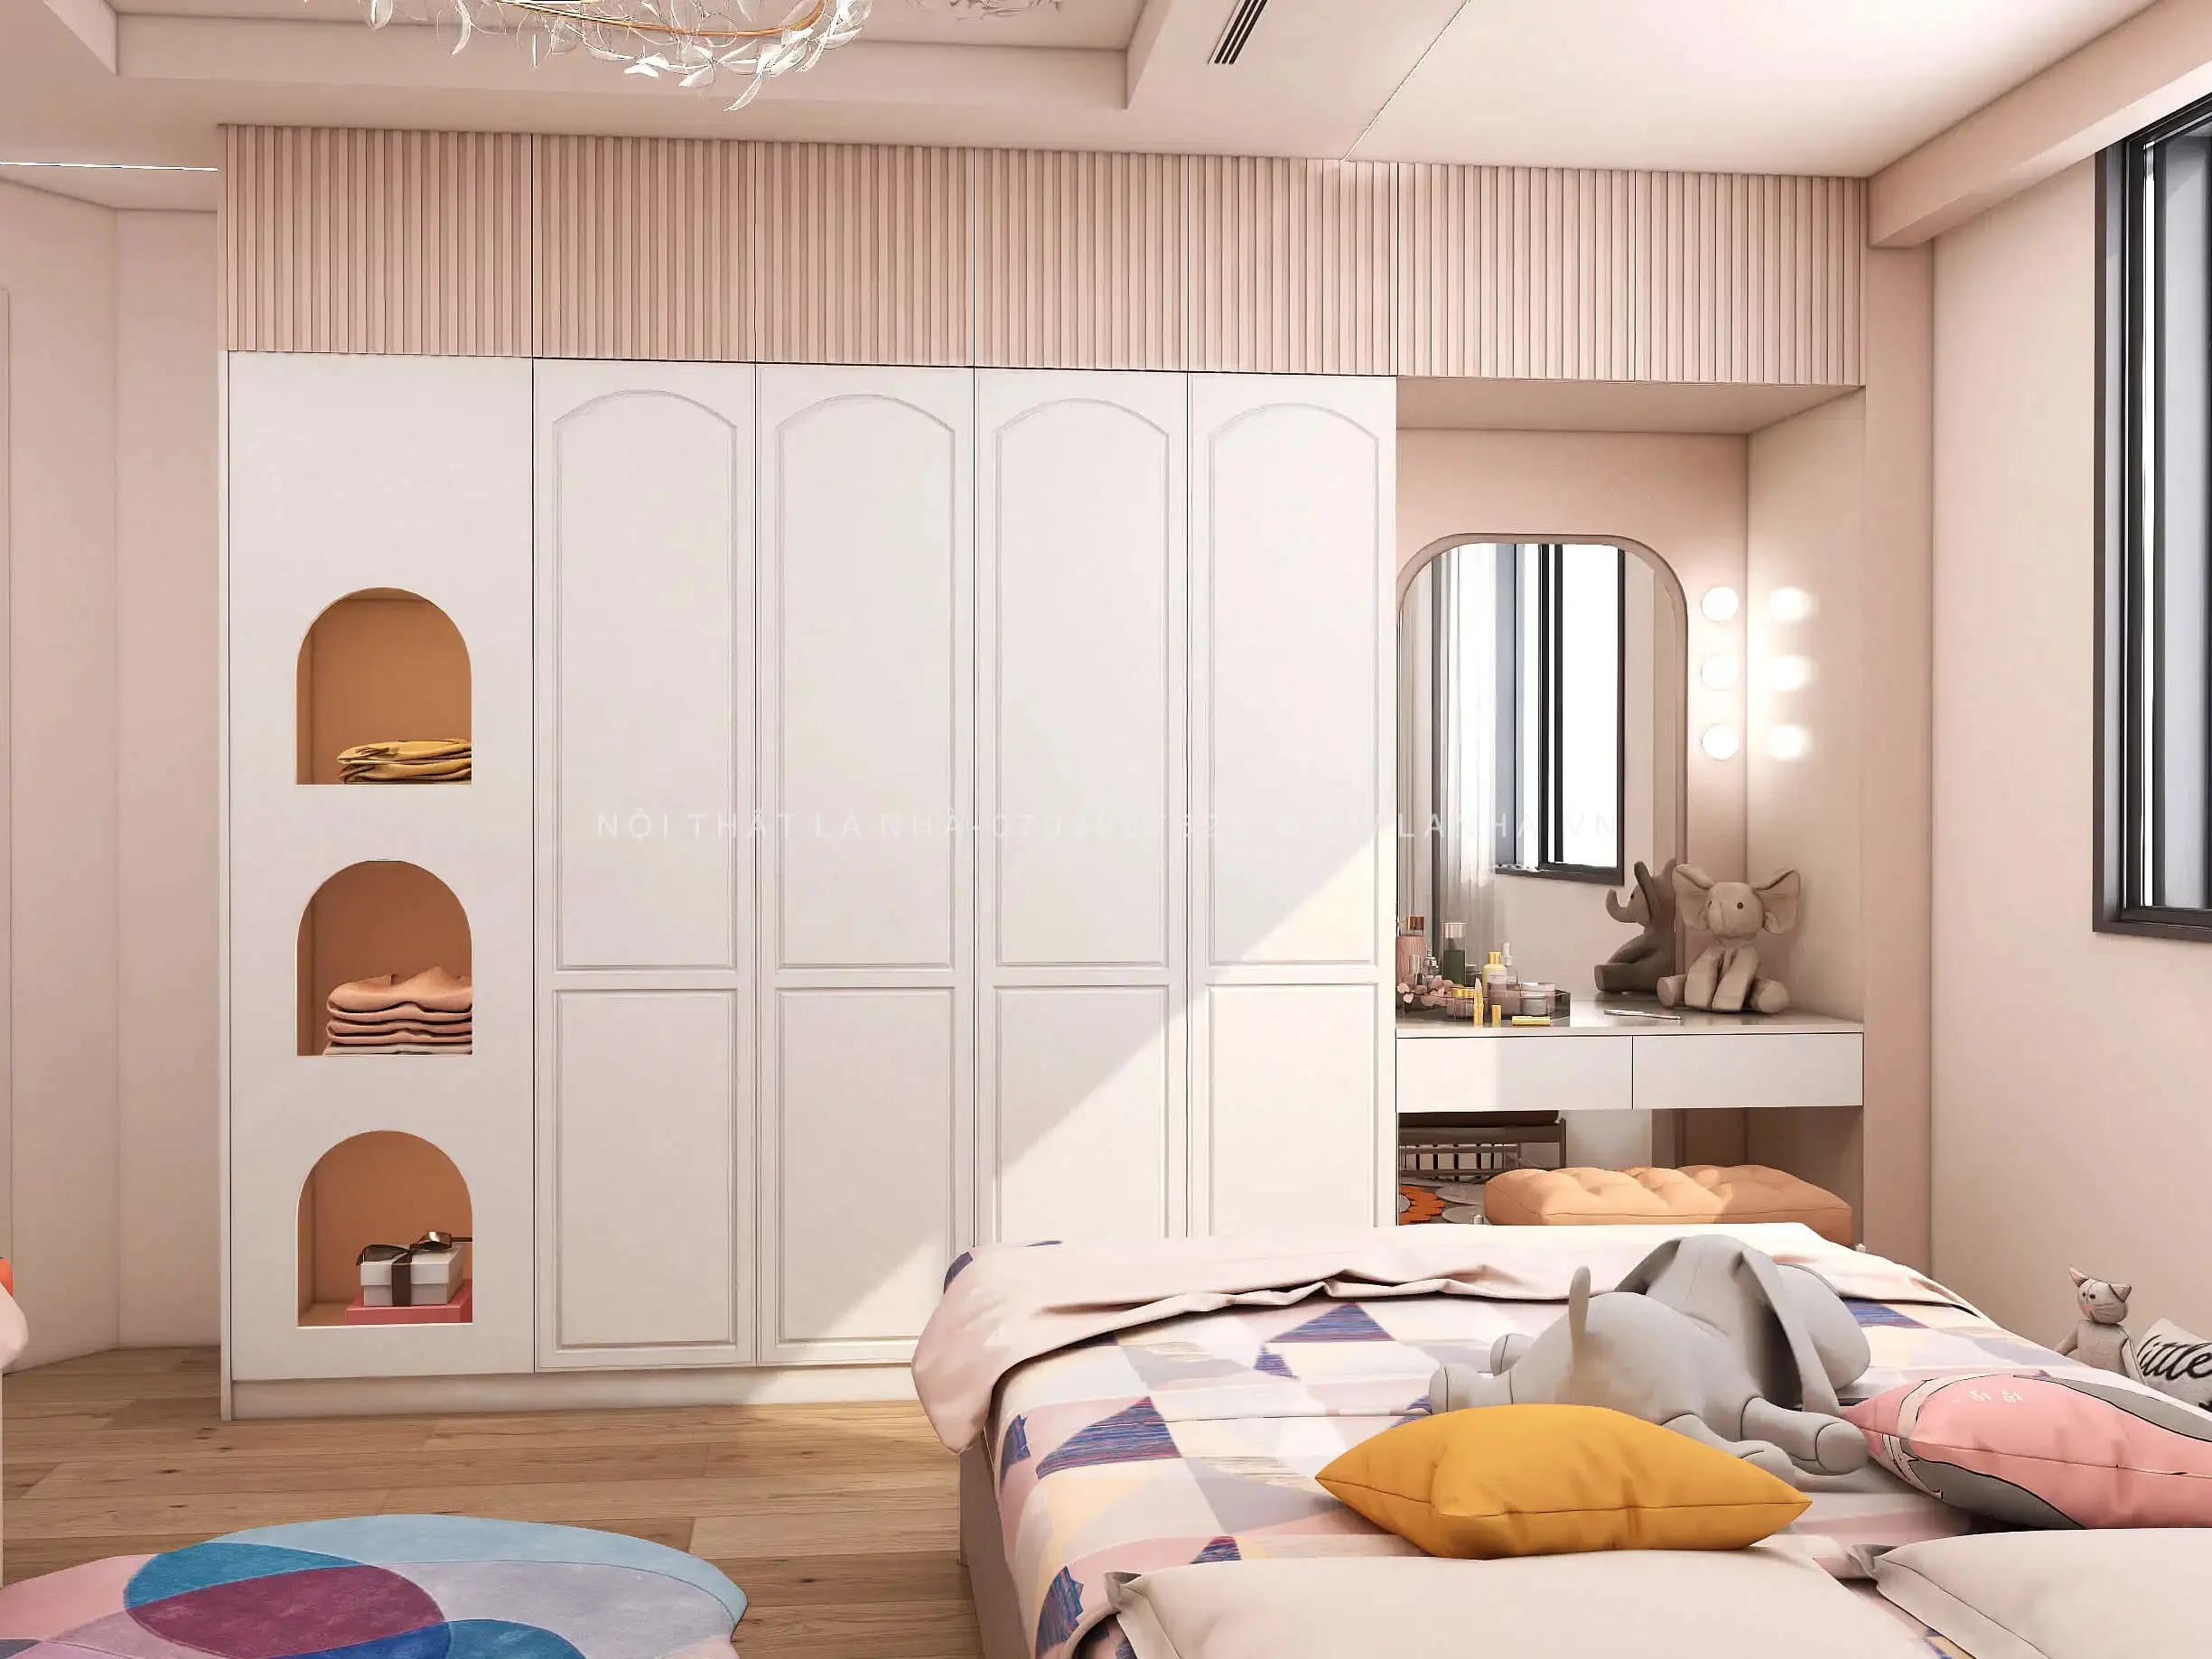 Thiết kế phòng ngủ đẹp cho phái đẹp - Nguyên tắc cần nhớ